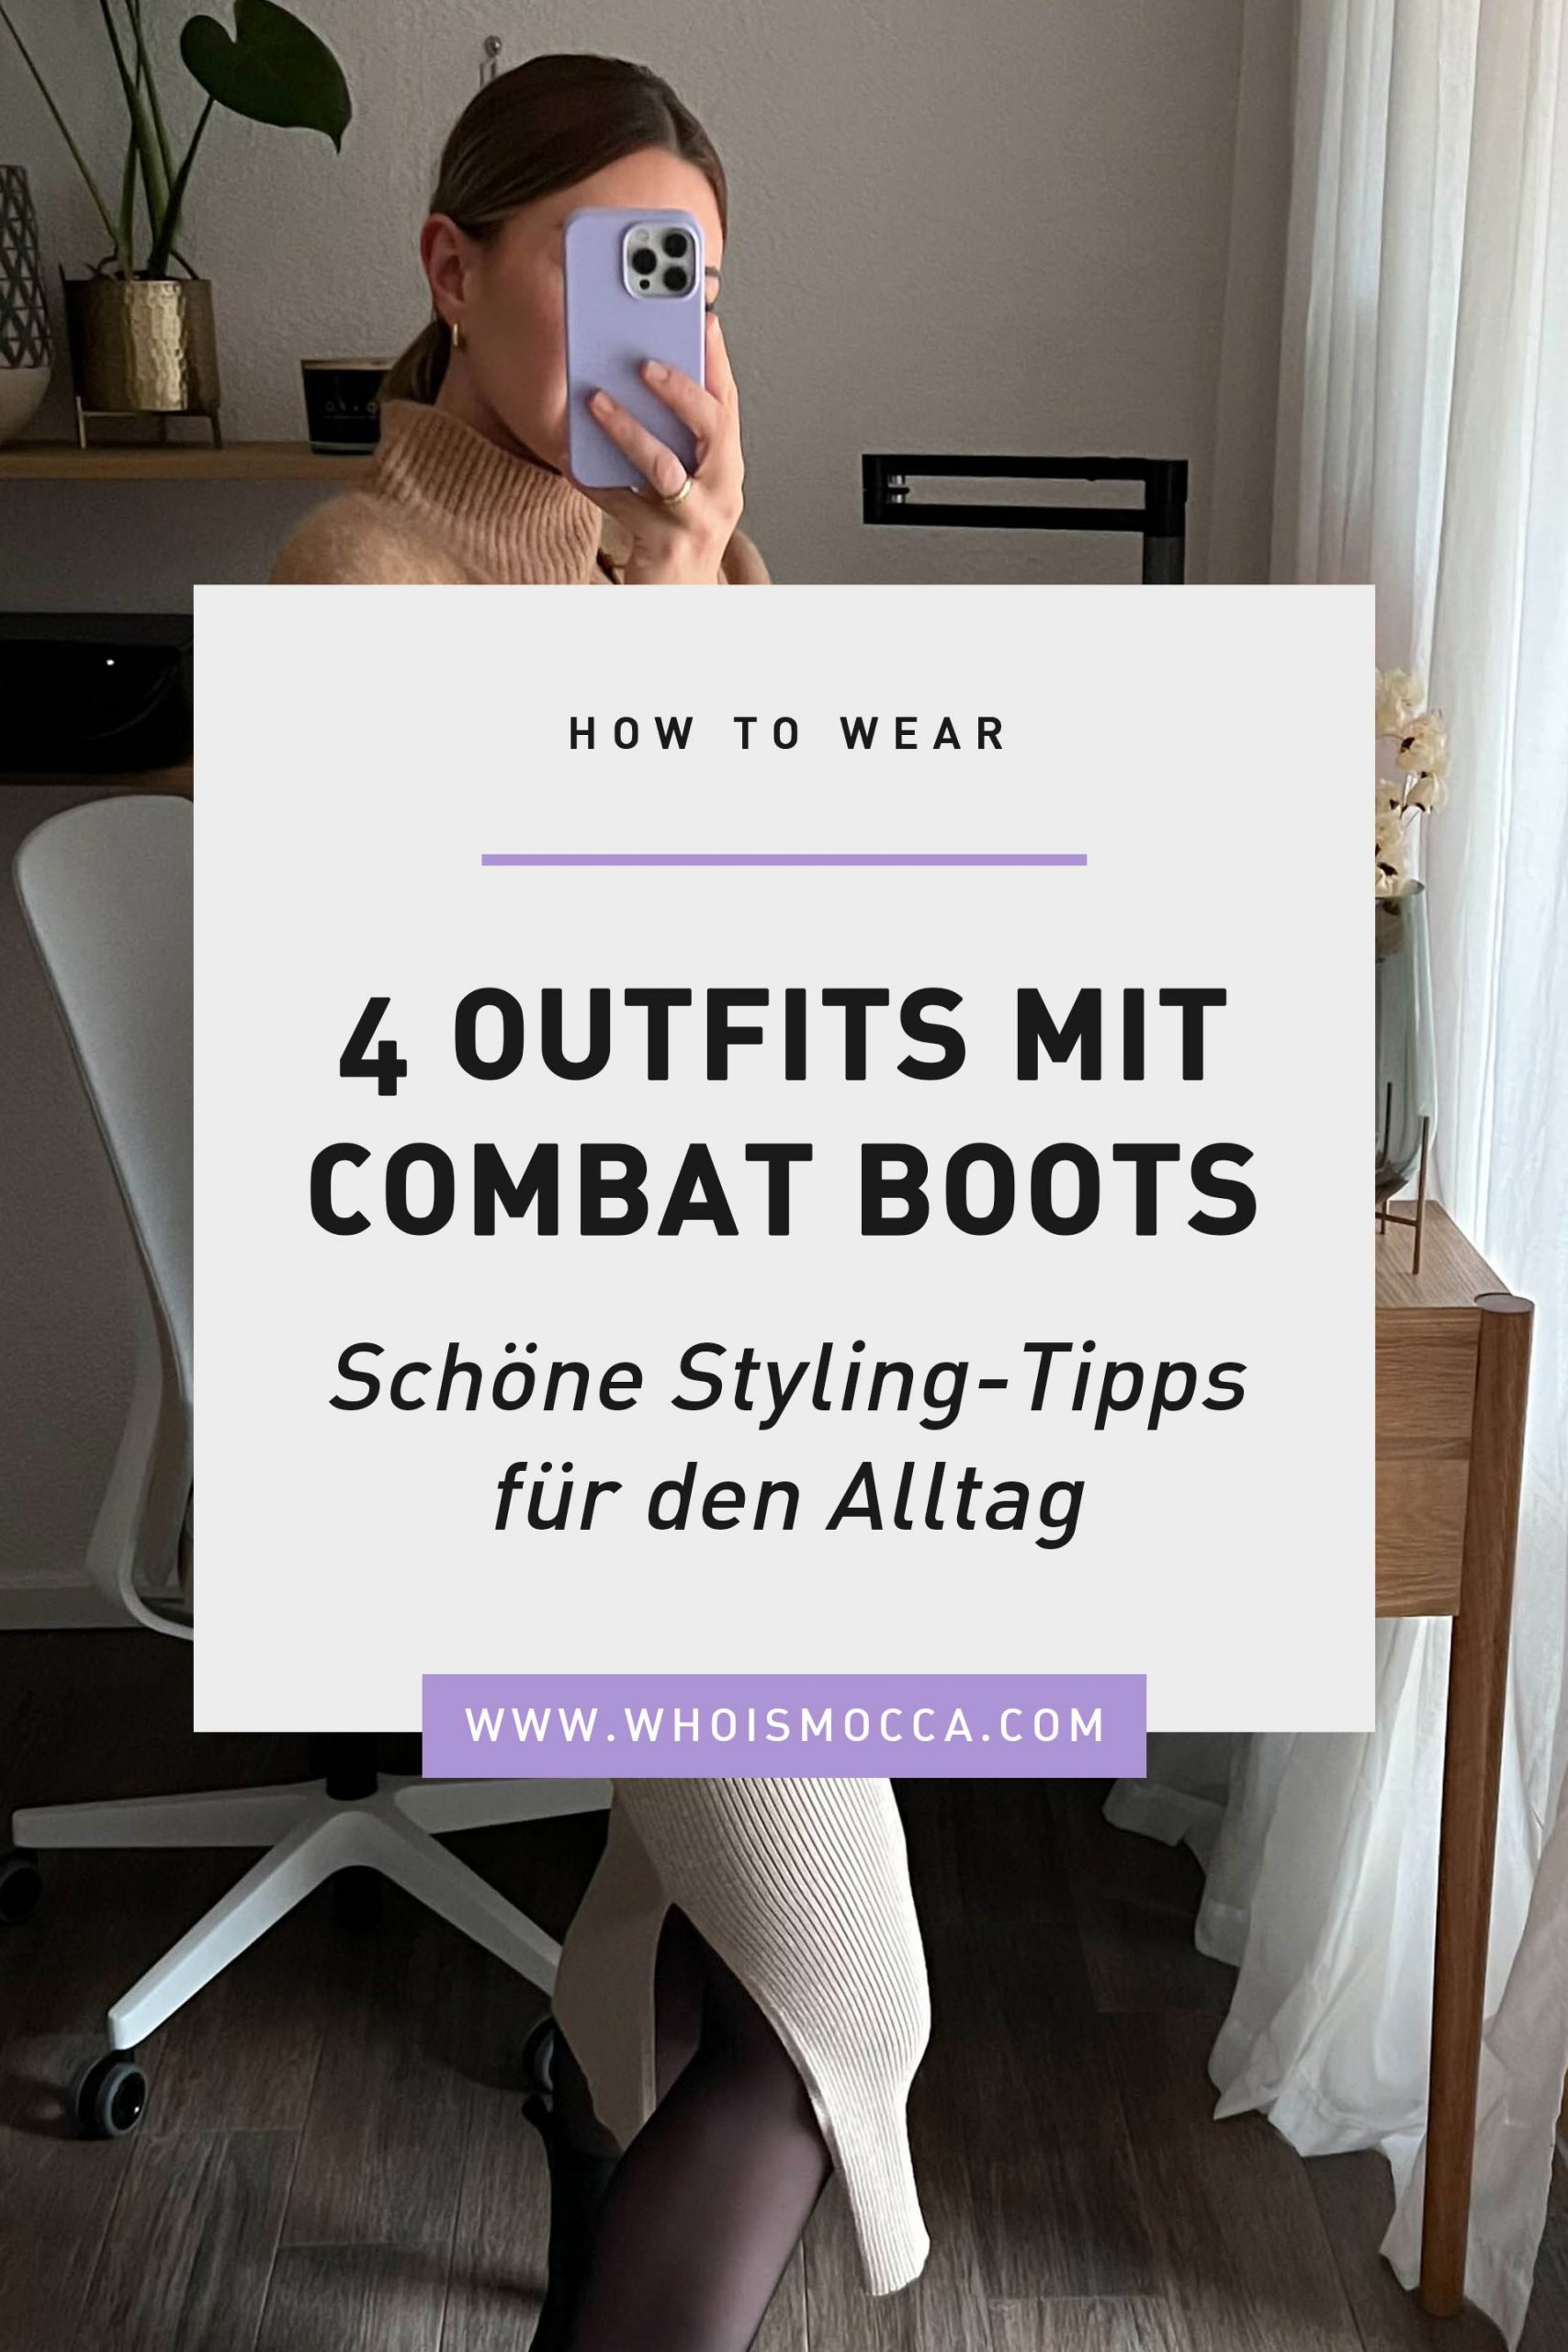 Am Modeblog findest du 4 alltagstaugliche und schöne Combat Boots Outfits. Ich zeige dir, wie du die derben Biker Boots toll stylen kannst.